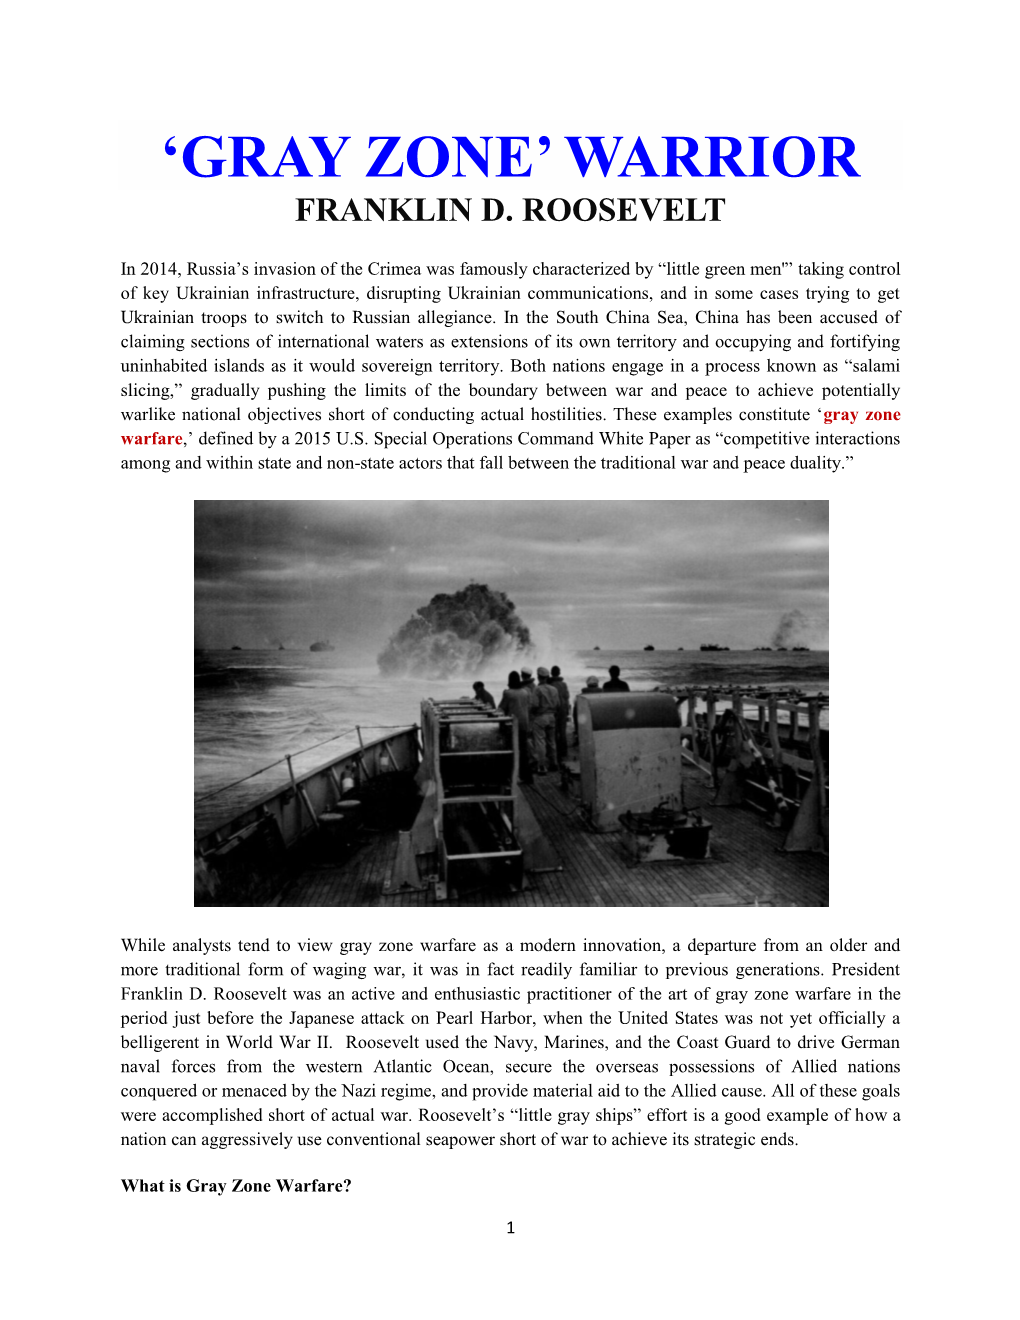 WWII Gray Zone Warrior